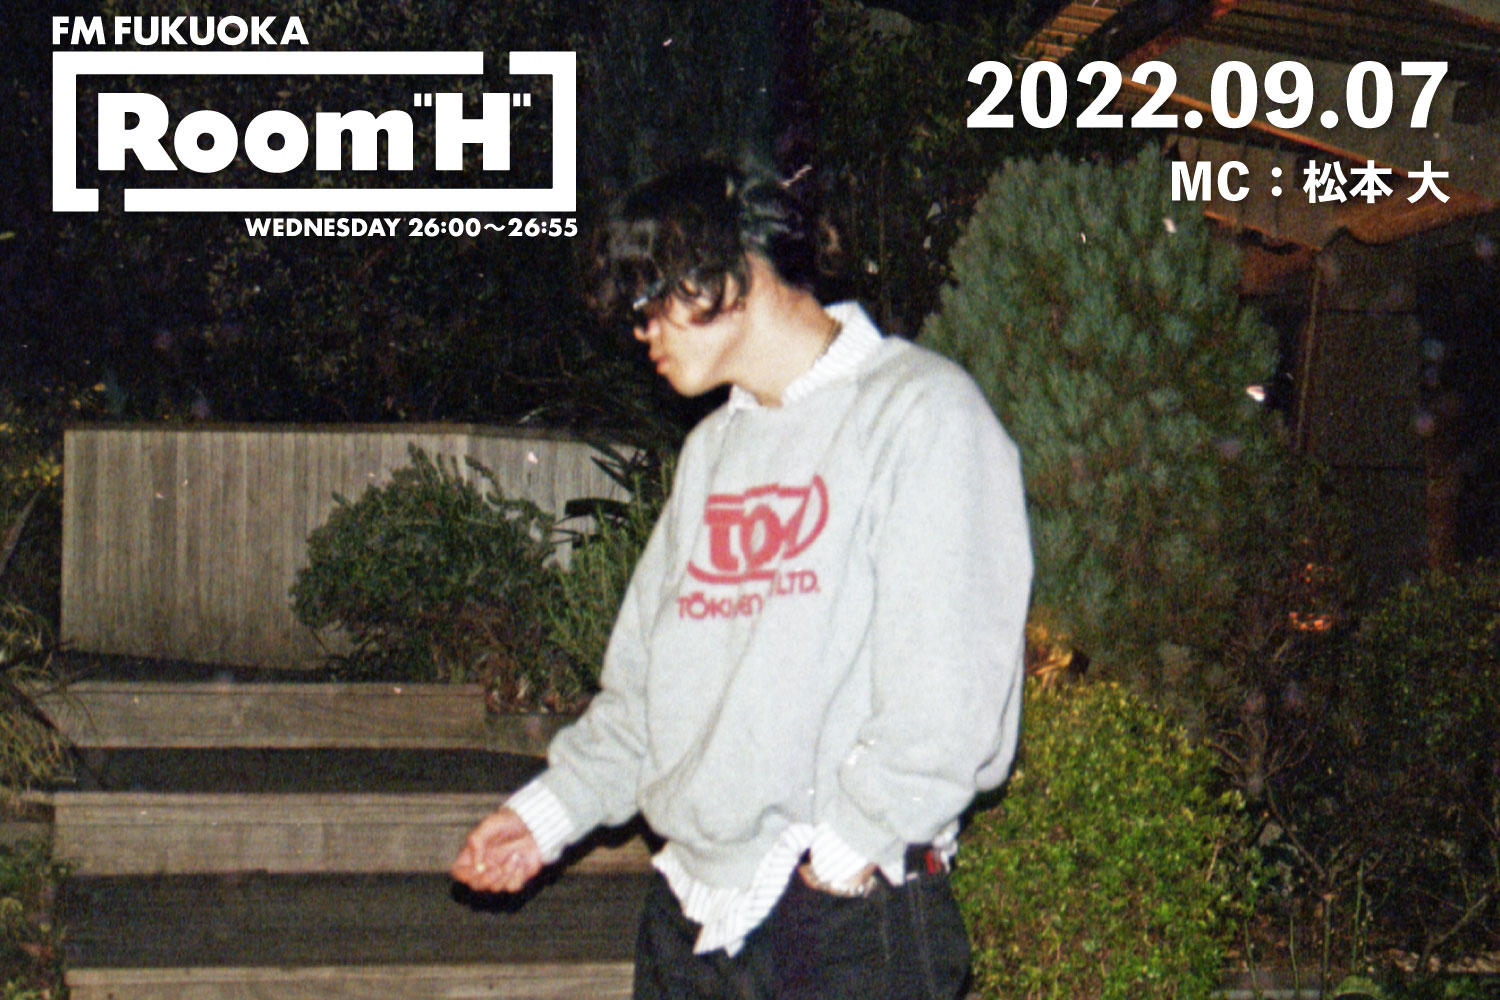 【読むラジオ】MC：松本大 2022年のサマソニを振り返る！「Room H」 -2022.09.07-